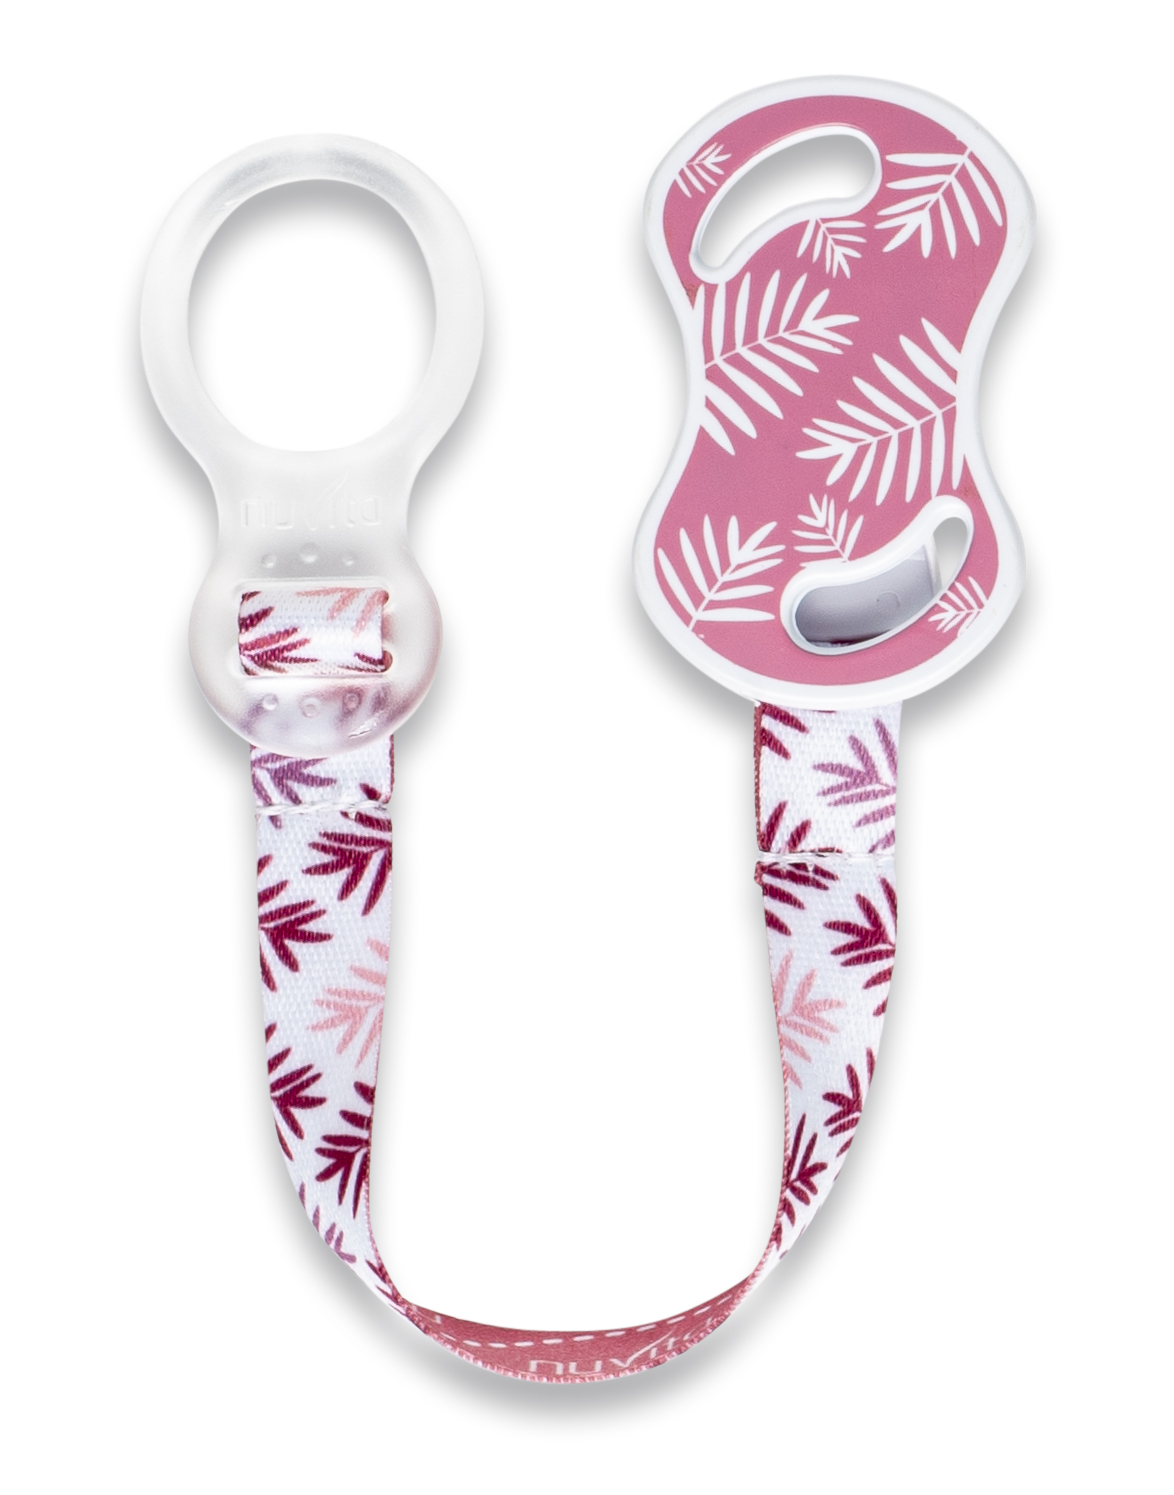 Nuvita cumitartó szalag csipesszel és gyűrűvel – Pink Rabbit